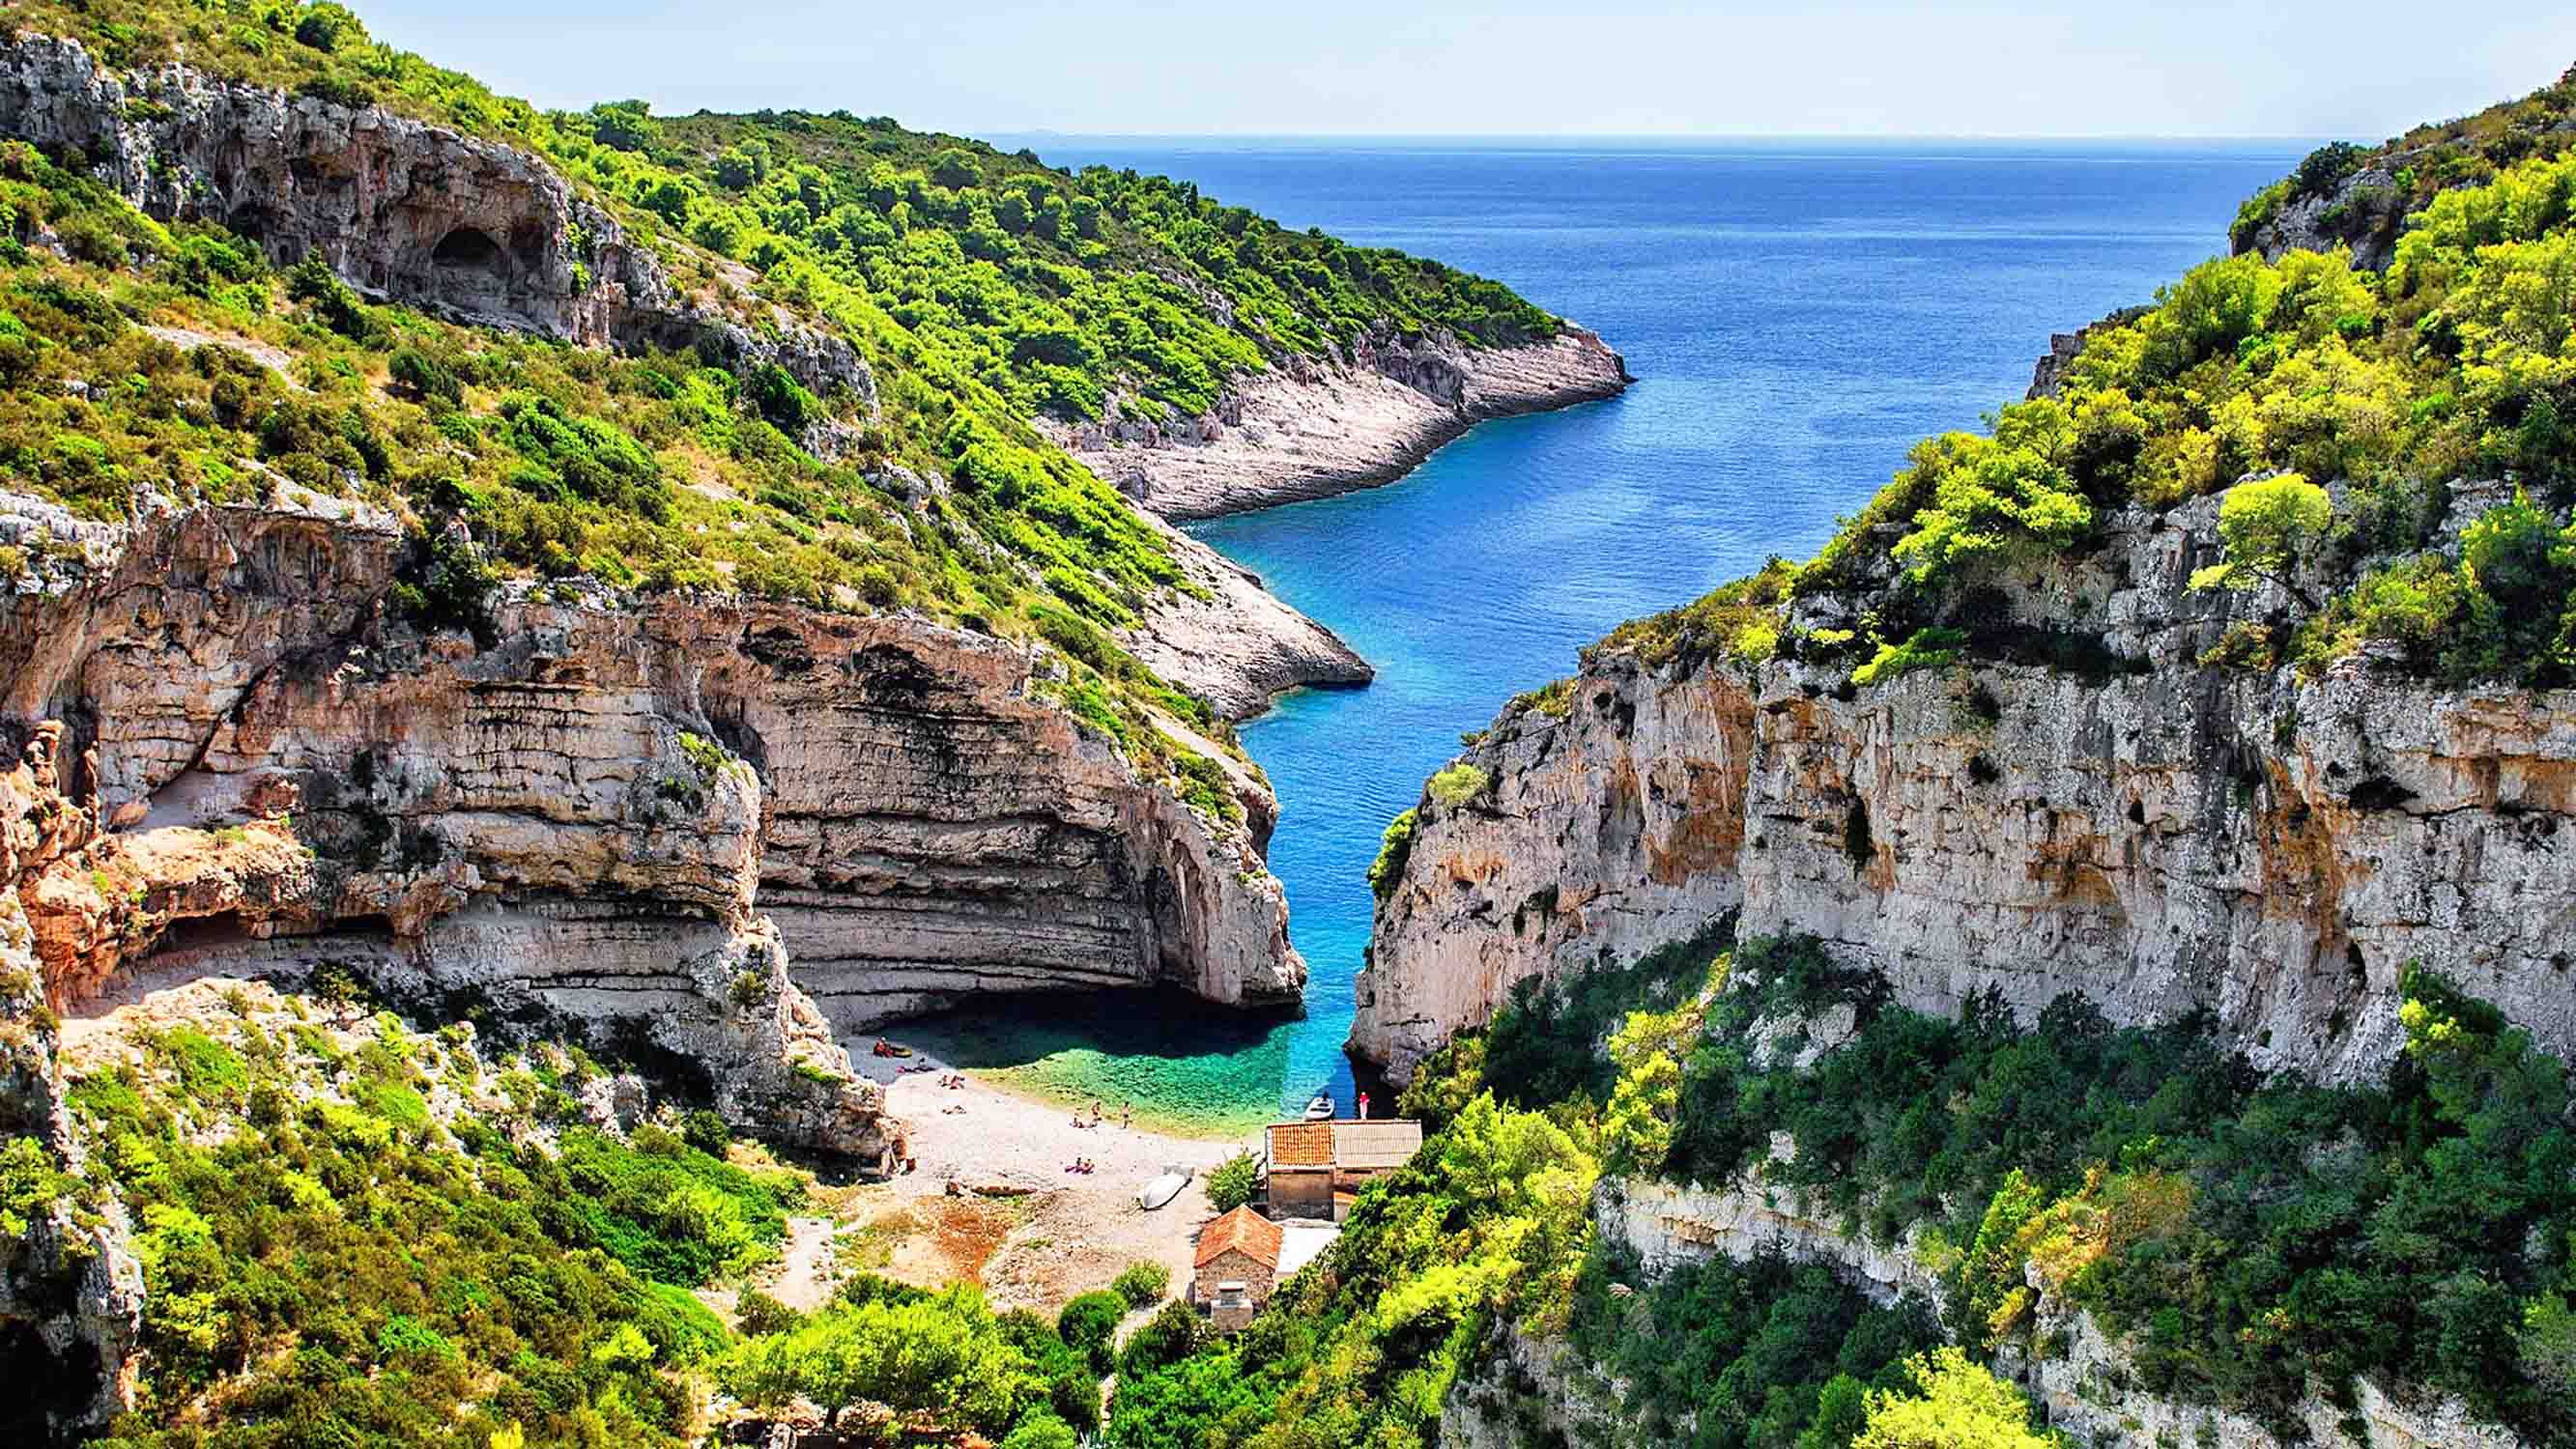 La Grotta azzurra si trova anche in Croazia, nella minuscola e spopolata isoletta di Bisevo/Busi, a 3,5 miglia dalla maggiore isola di Vis, della quale costituisce una delle più consistenti attrattive turistiche.